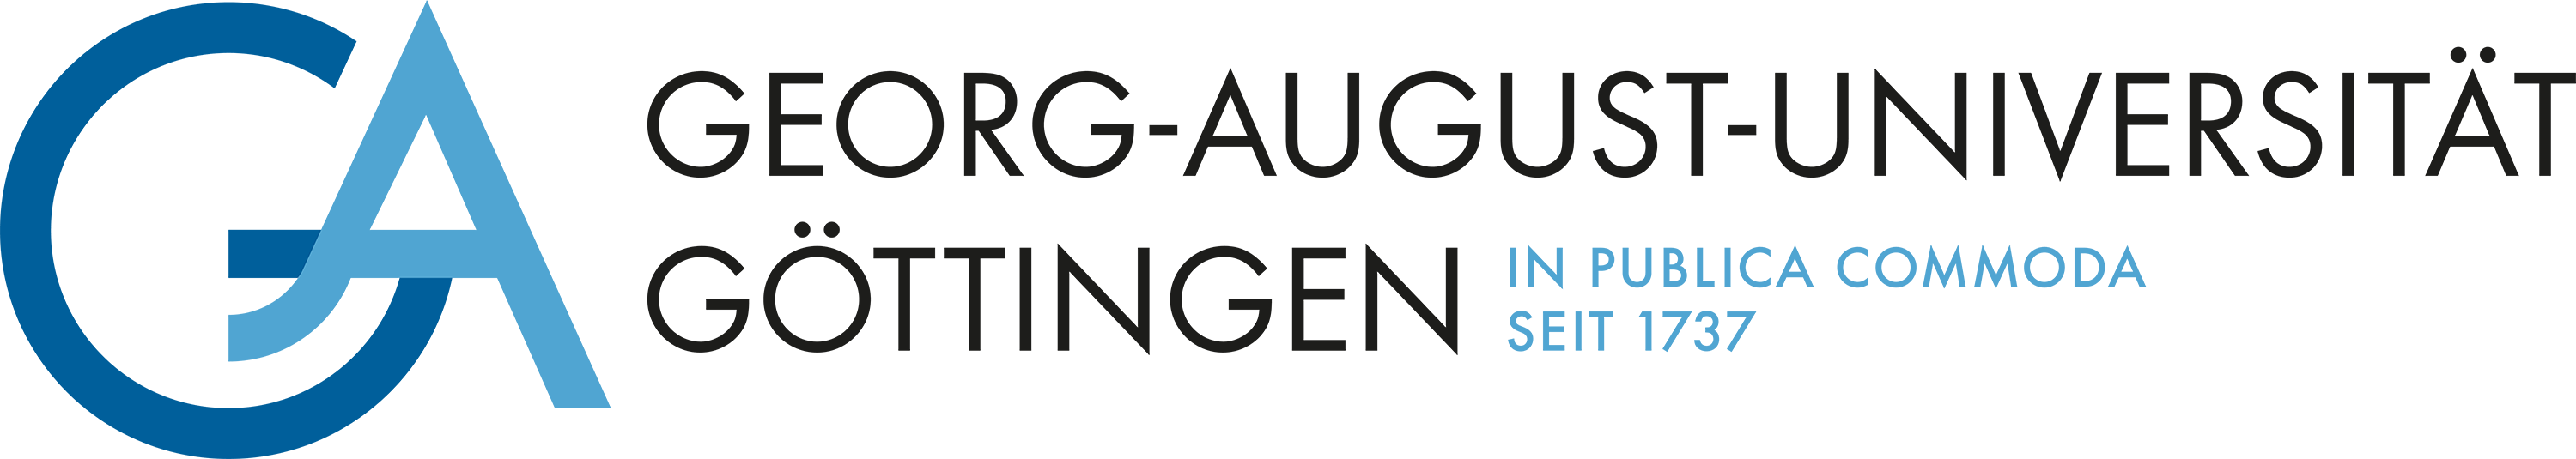 Logo of the University of Göttingen